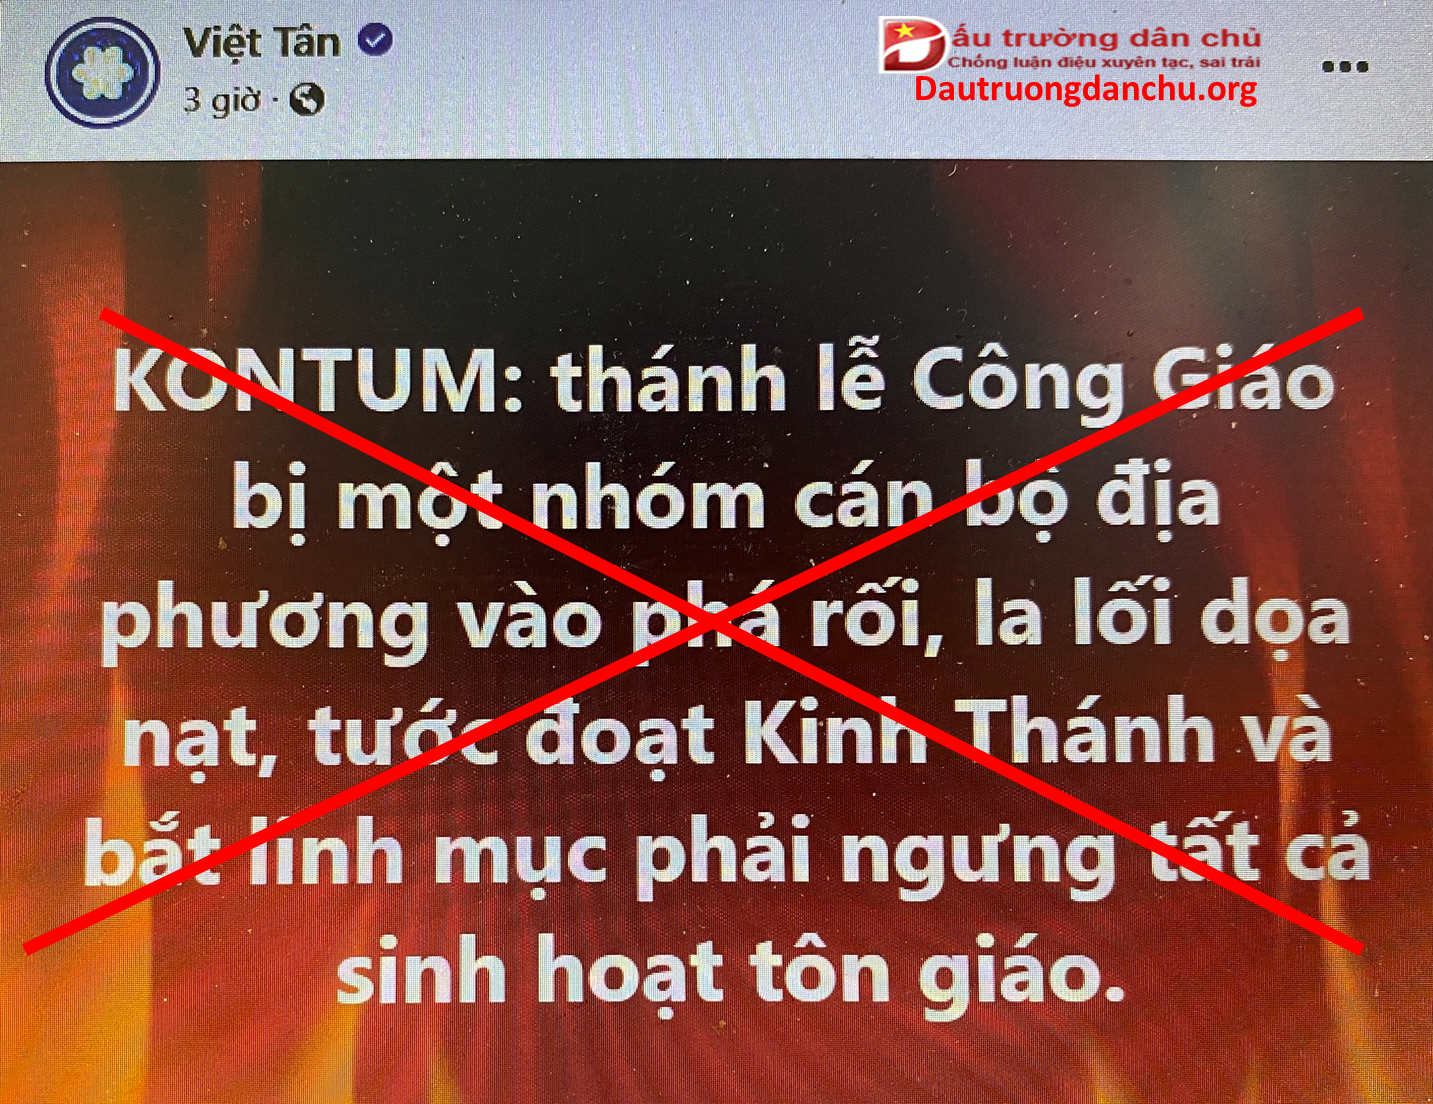 Việt Tân lại xuyên tạc chính sách tôn giáo ở Việt Nam